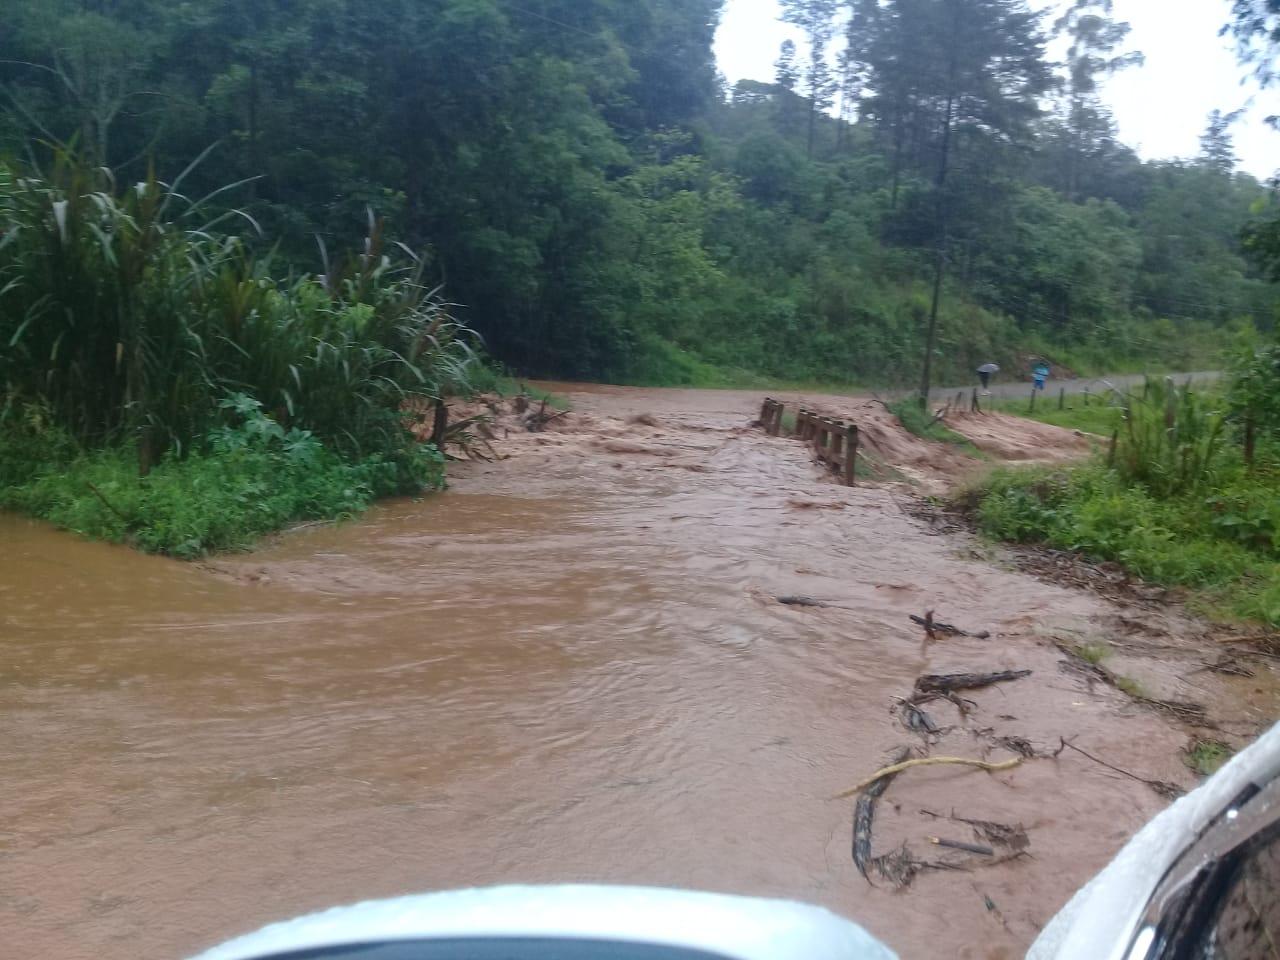 Chuvas intensas causam danos na Comunidade de Linha São Miguel, em Xavantina